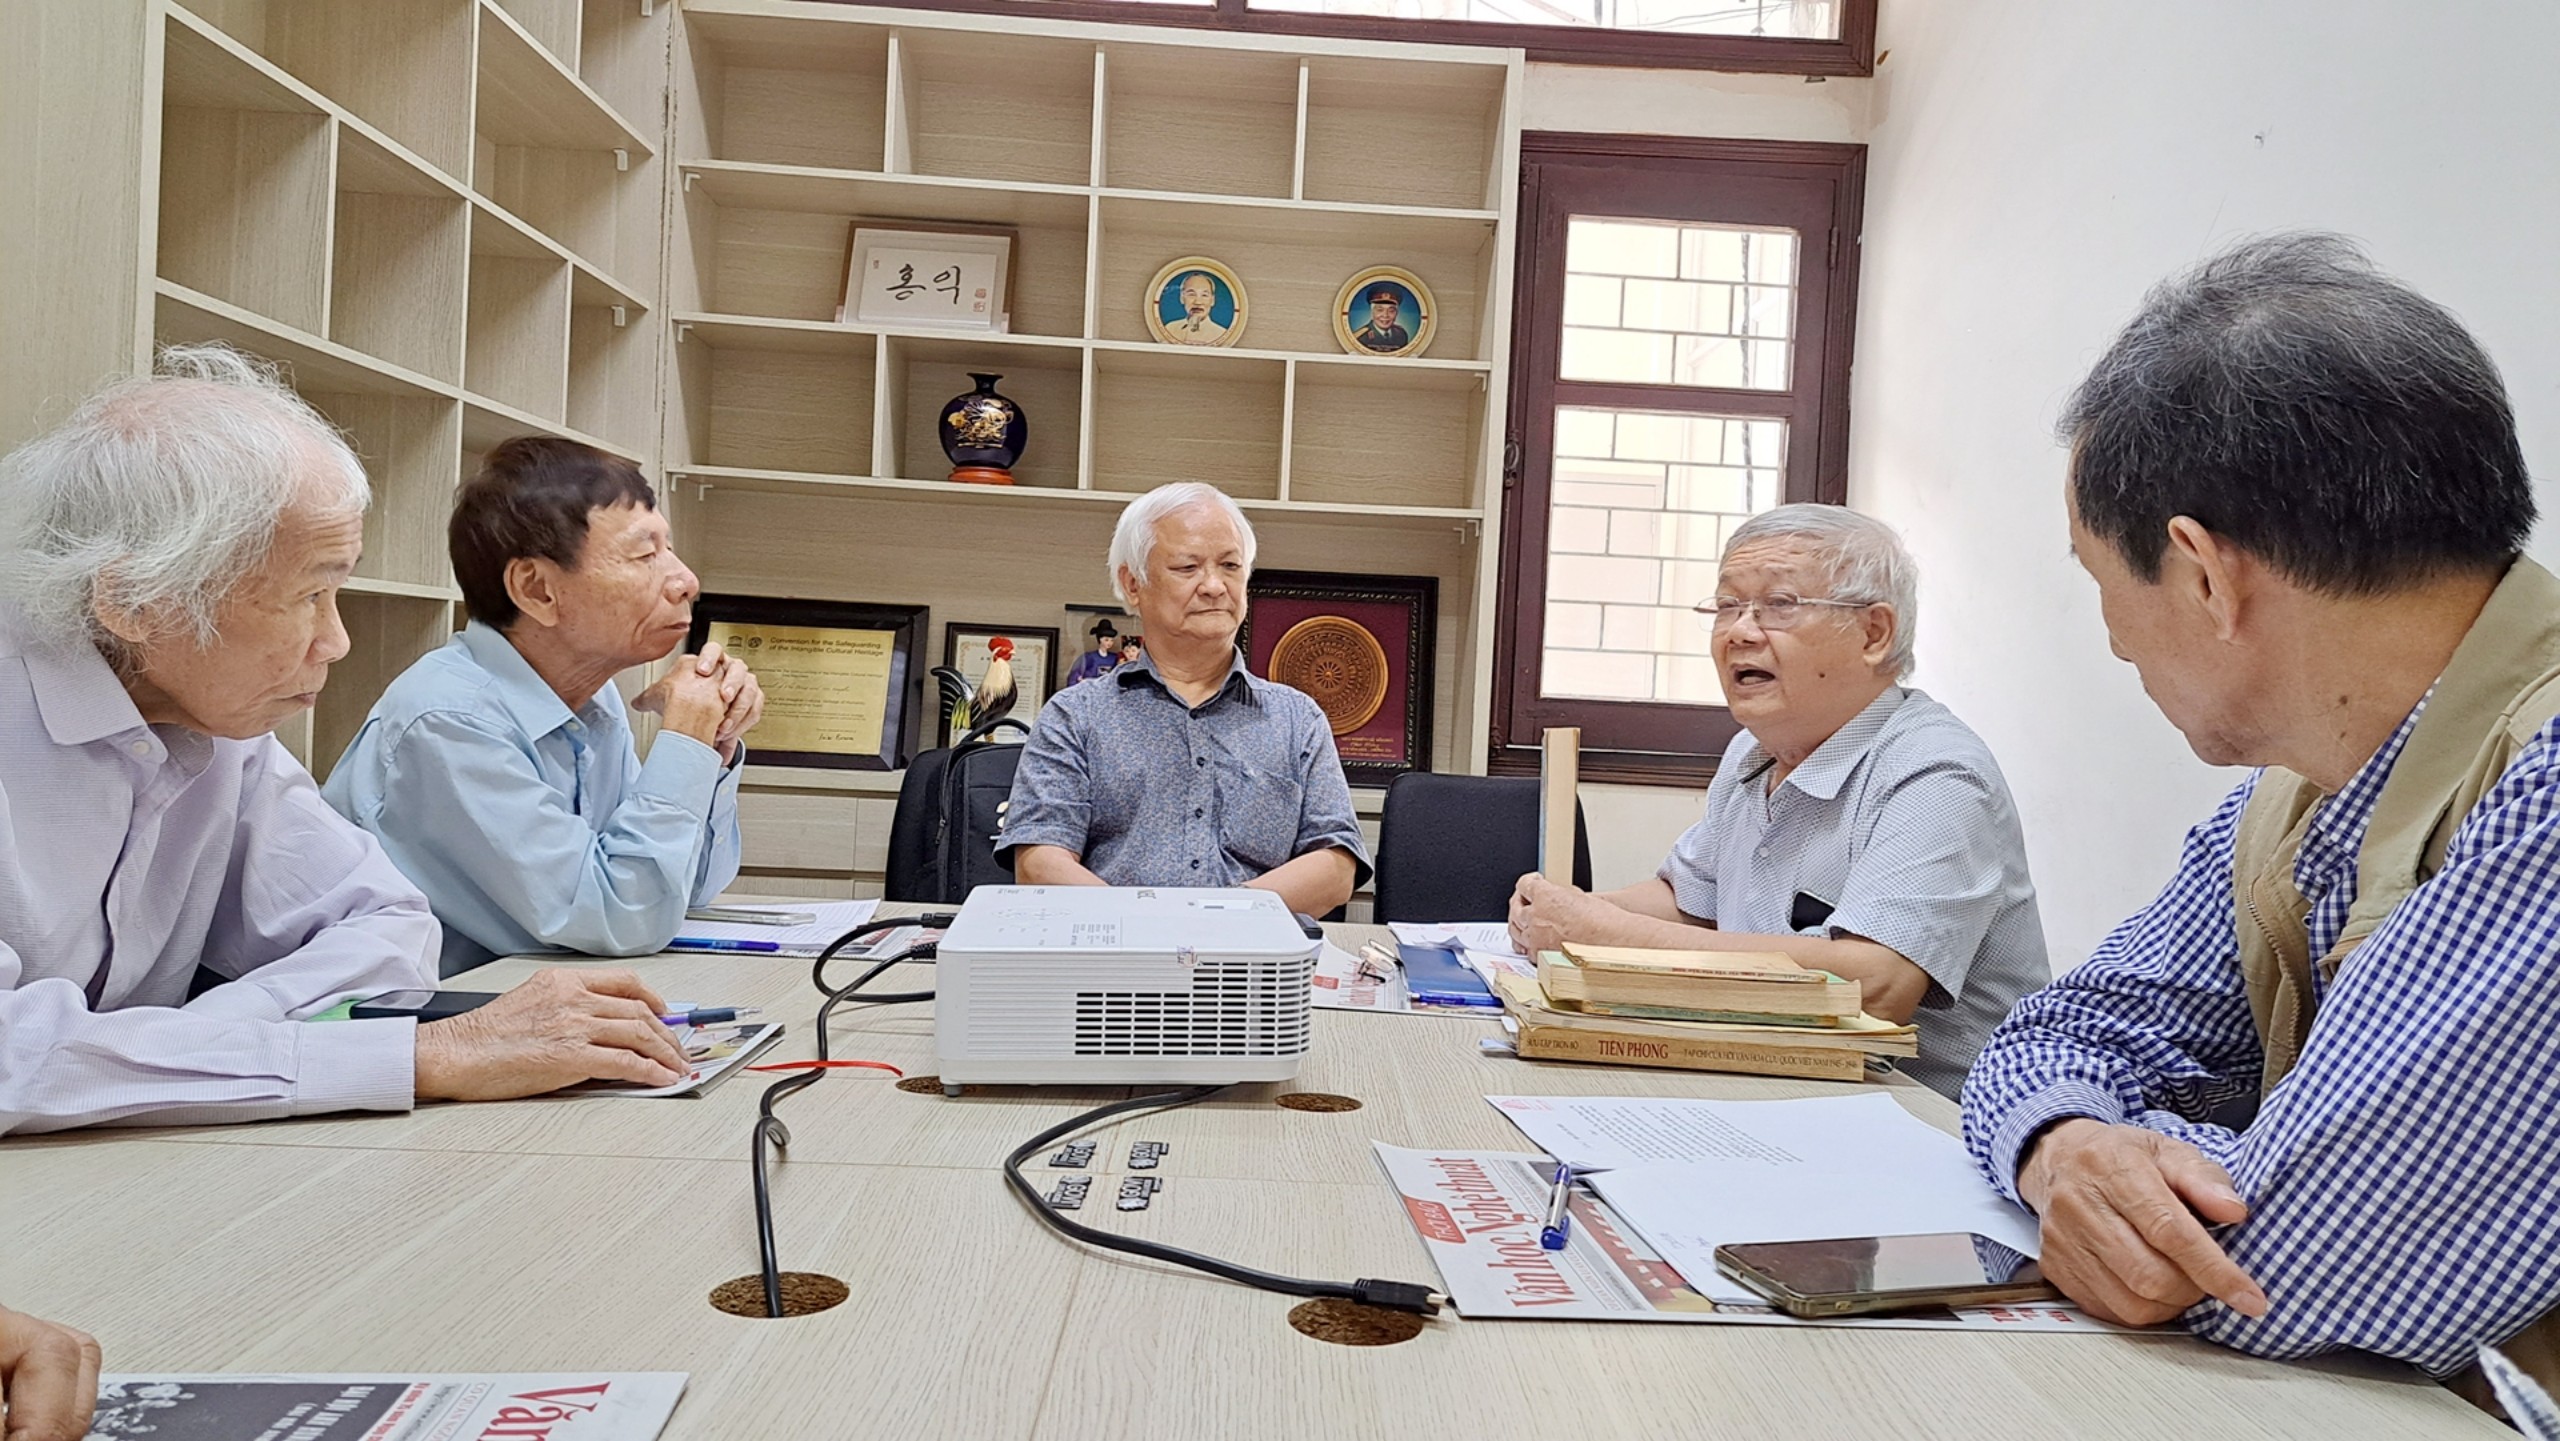 (Ảnh) Những dấu ấn đặc biệt của cuộc thi Tìm hiểu 75 năm xây dựng và phát triển Liên hiệp các Hội Văn học nghệ thuật Việt Nam - 15